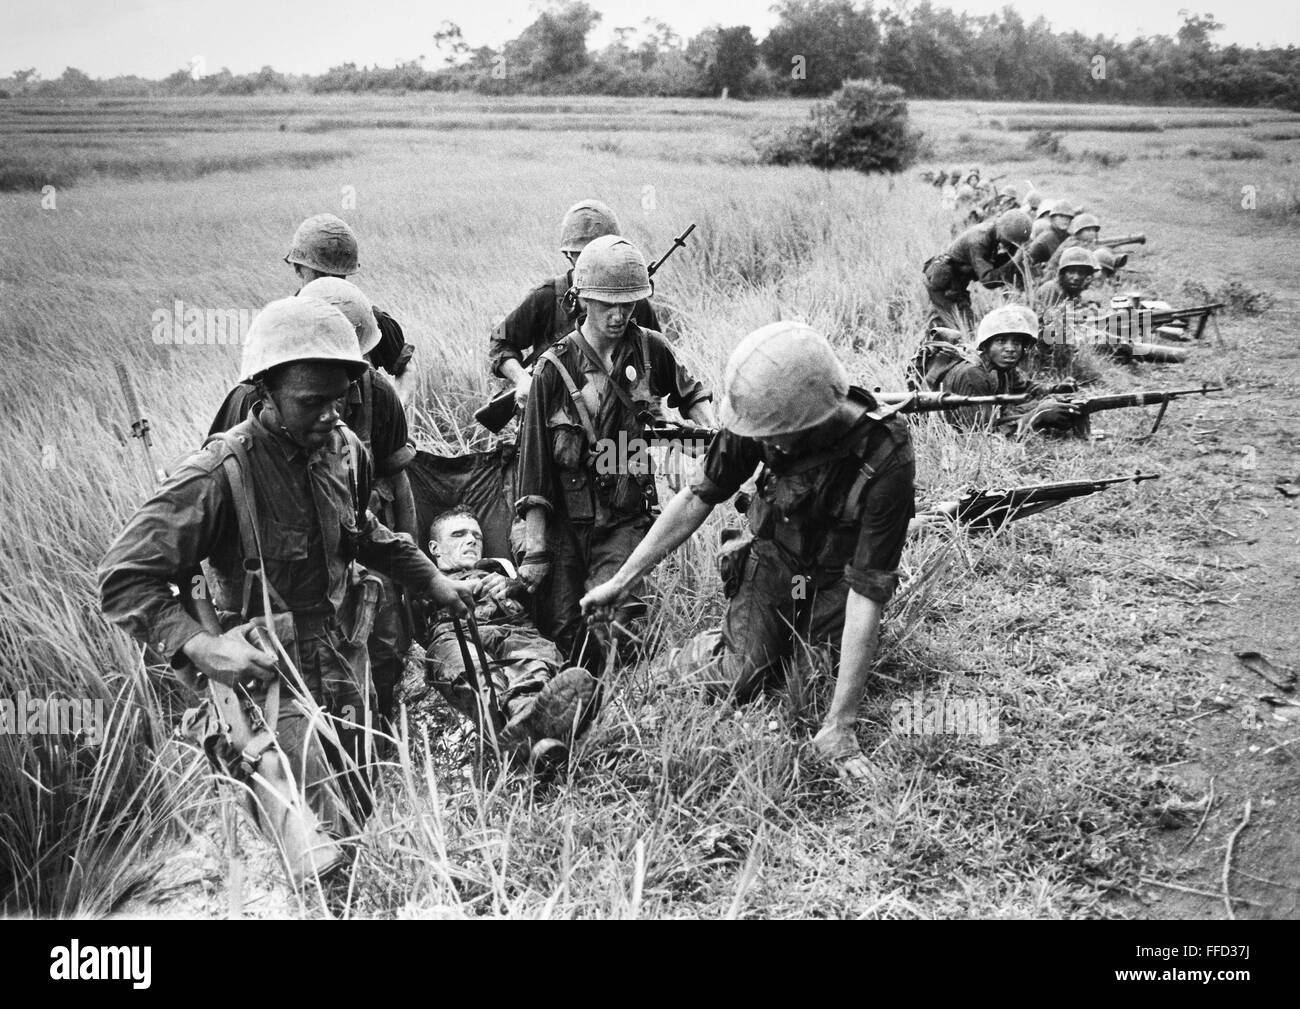 Guerra de Vietnam: heridos, 1966. /NA Infante de Marina herido es  arrastrado mientras otros Marines dar rifle cubierta, unos 2 km al sur de  la zona desmilitarizada, 1966 Fotografía de stock - Alamy